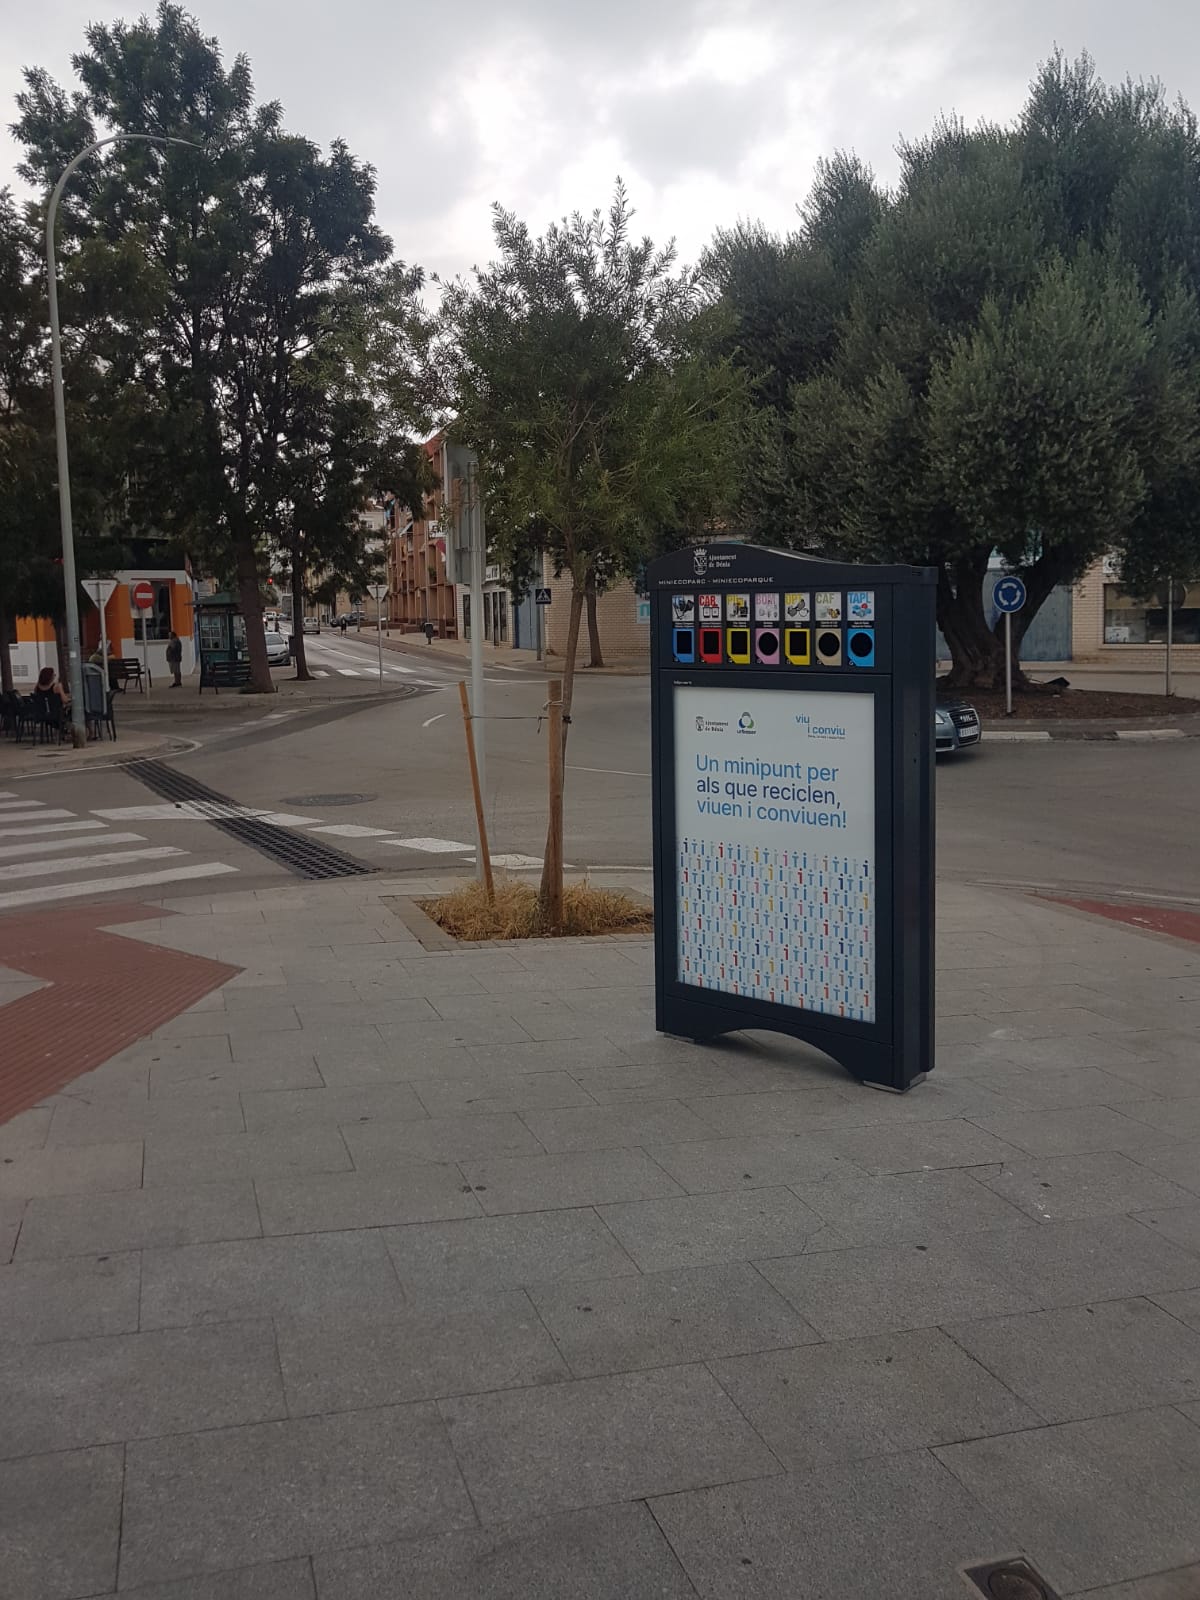 
Instal·len minipunts nets als carrers de Dénia per a acostar la recollida selectiva a la c...